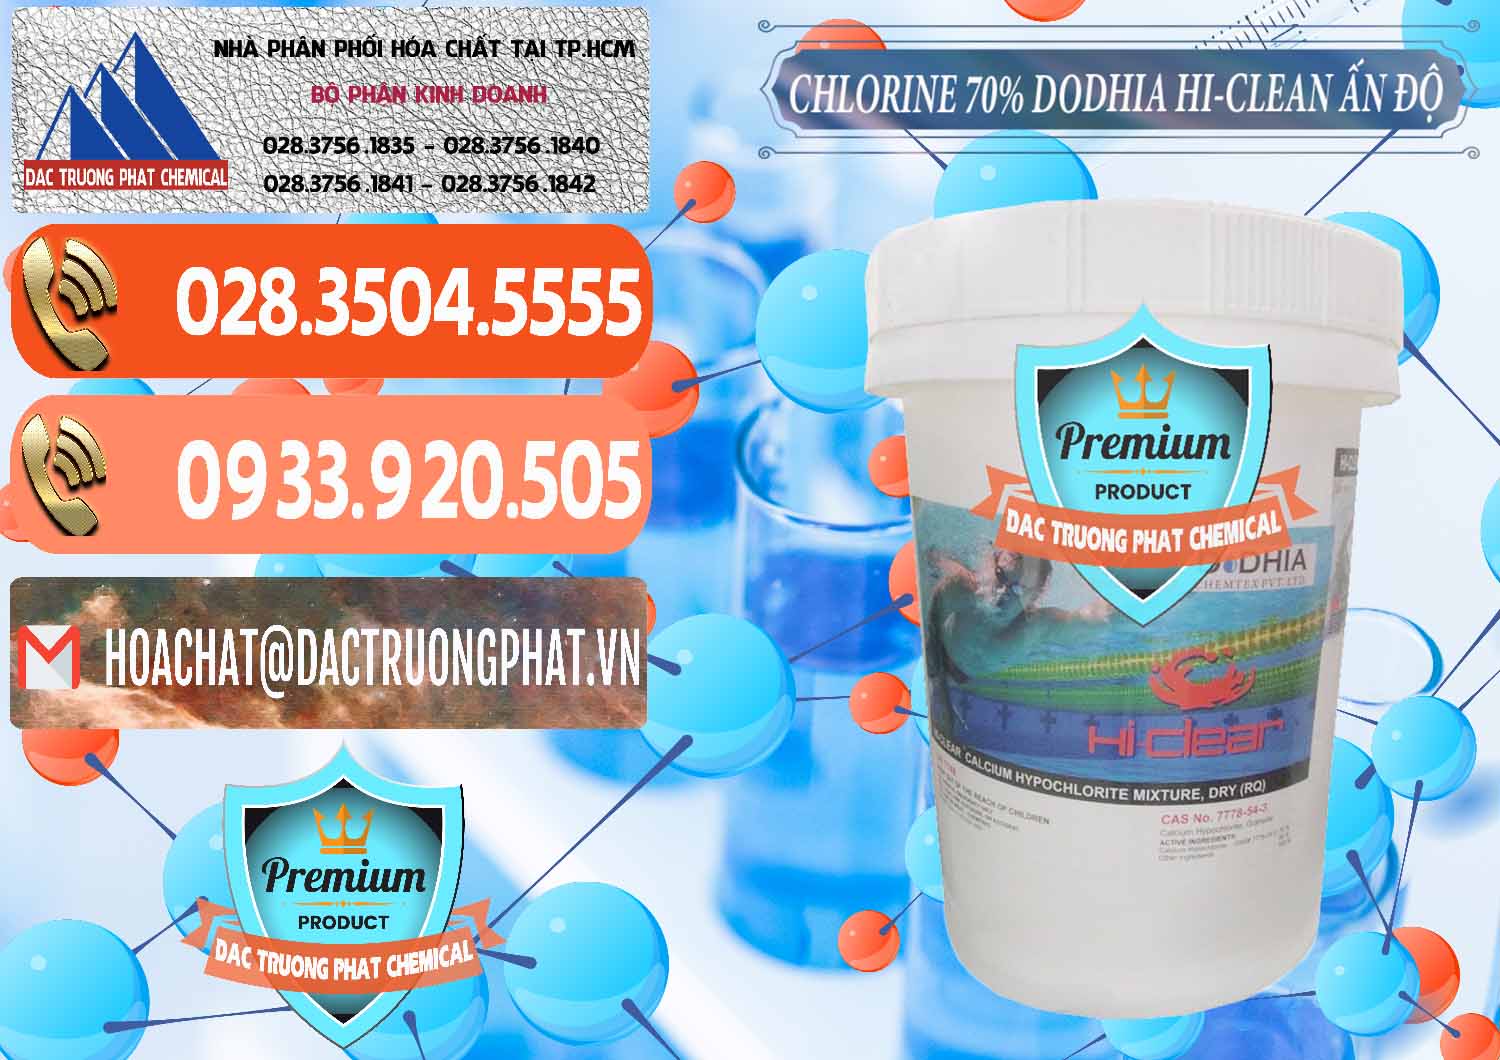 Nơi bán & cung cấp Chlorine – Clorin 70% Dodhia Hi-Clean Ấn Độ India - 0214 - Công ty bán ( phân phối ) hóa chất tại TP.HCM - hoachatmientay.com